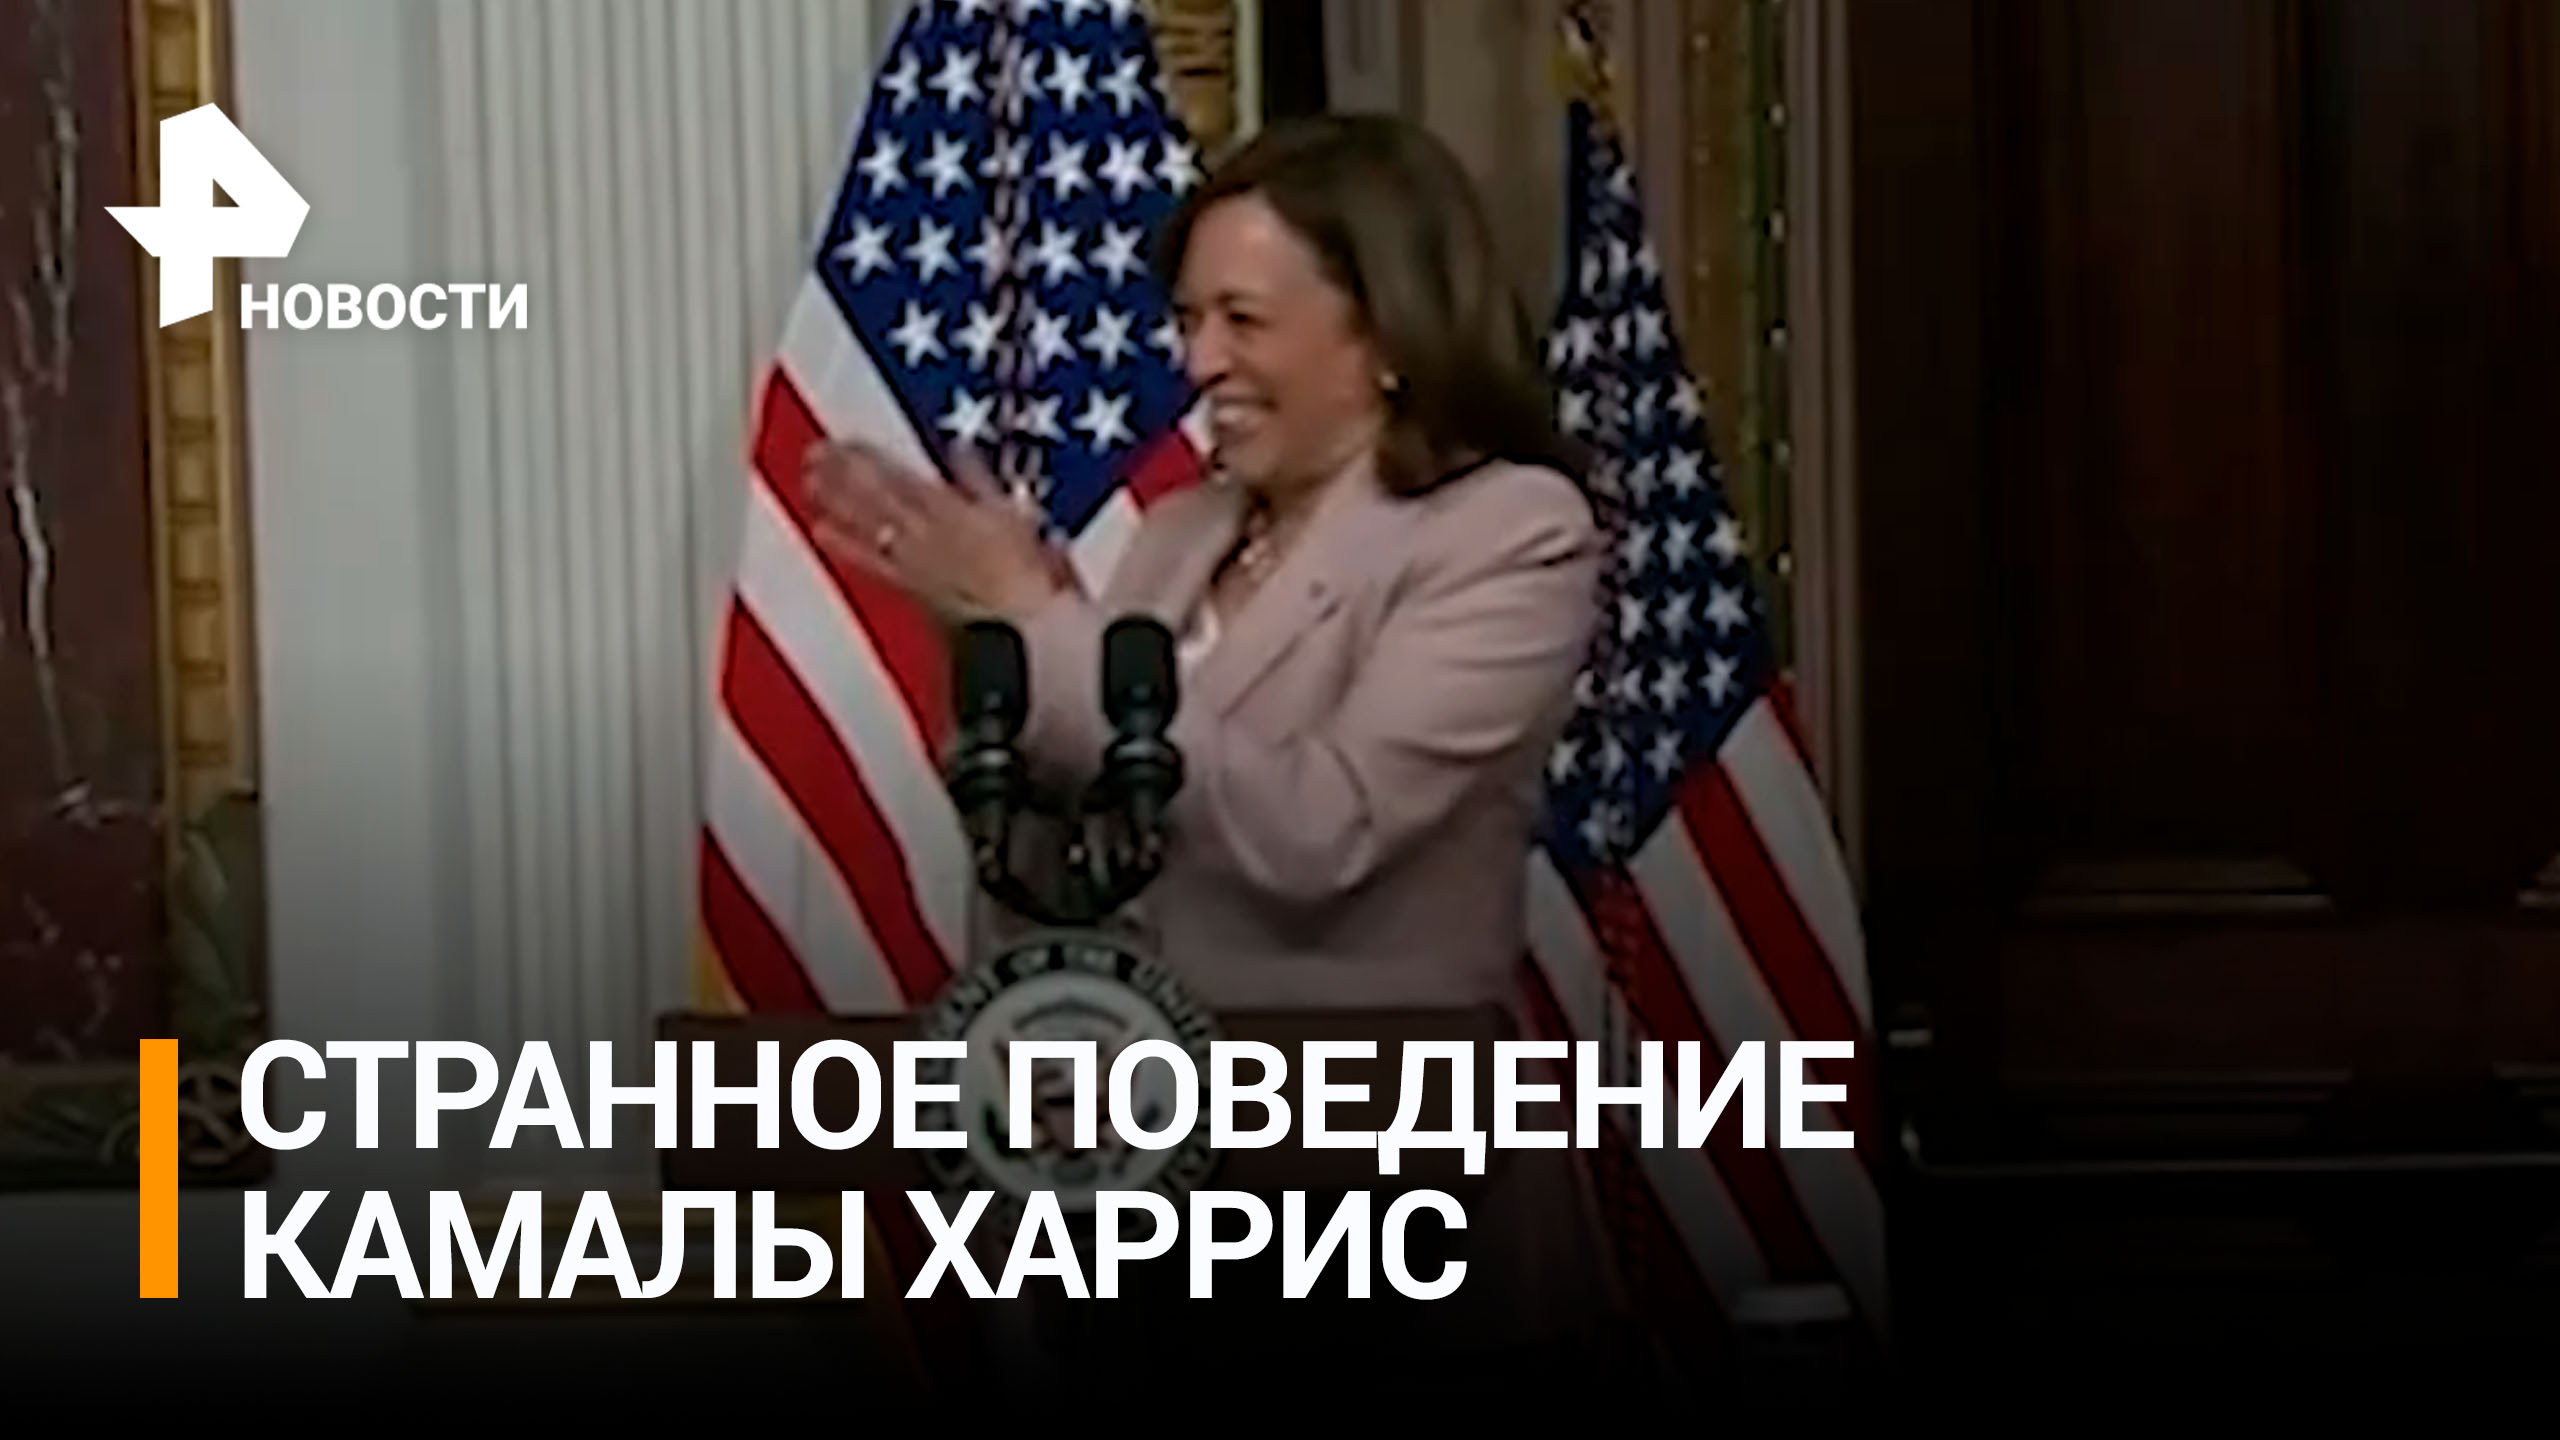 Вице-президента США Камалу Харрис заподозрили в появлении на публике нетрезвой / РЕН Новости